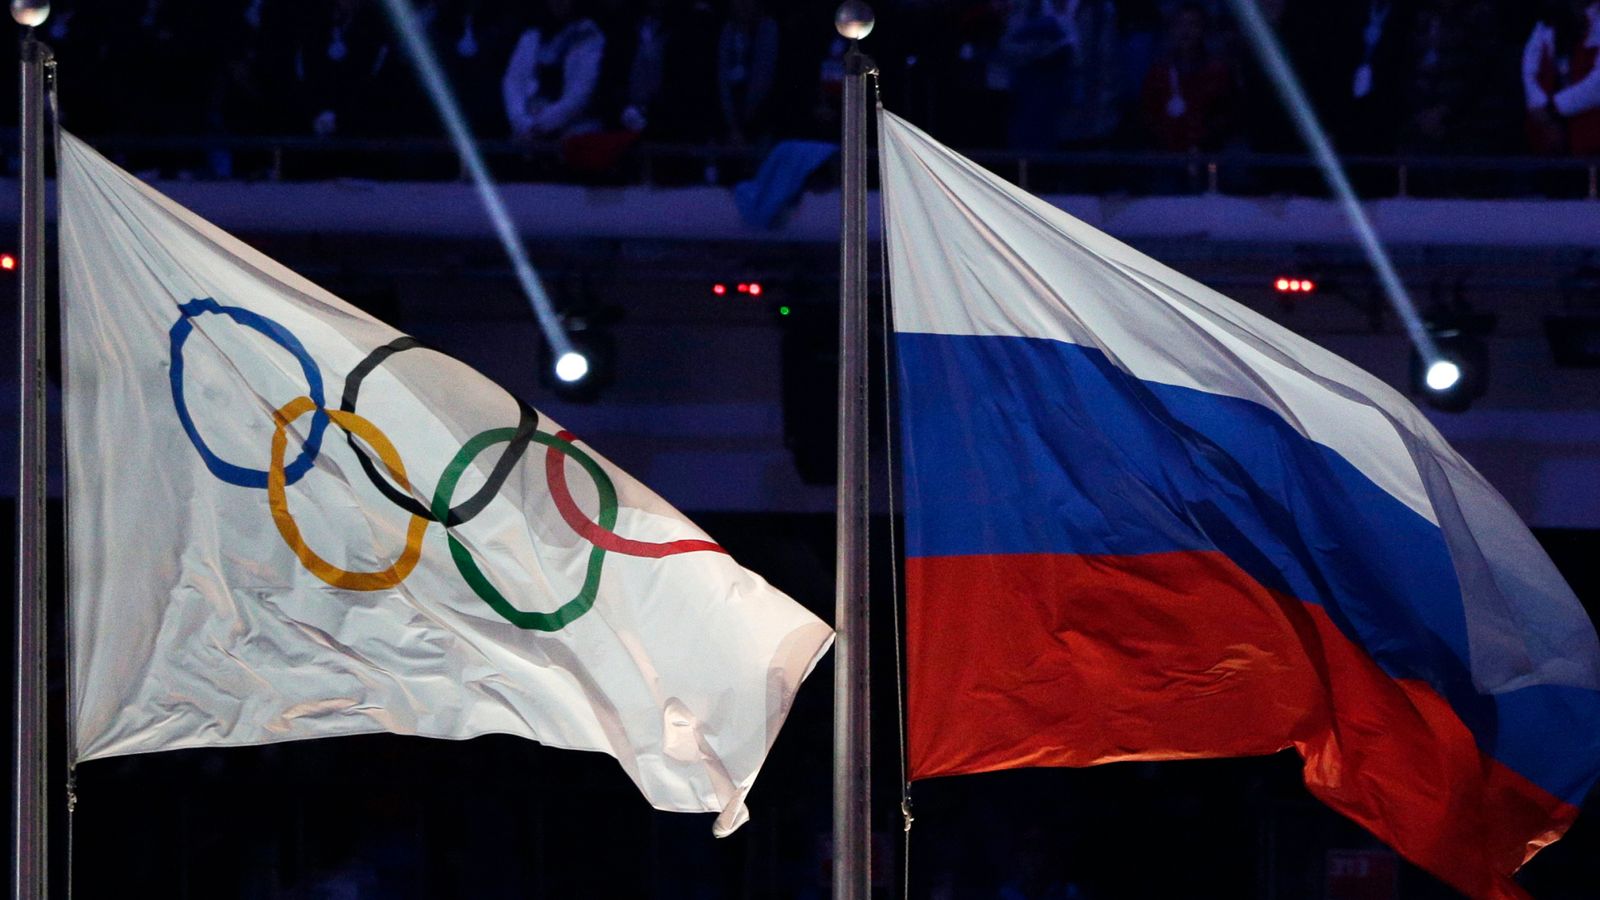 Париж-2024: Российские и белорусские спортсмены договорились, «если они нейтральны», заявил президент Британской олимпийской ассоциации |  Новости Олимпийских игр